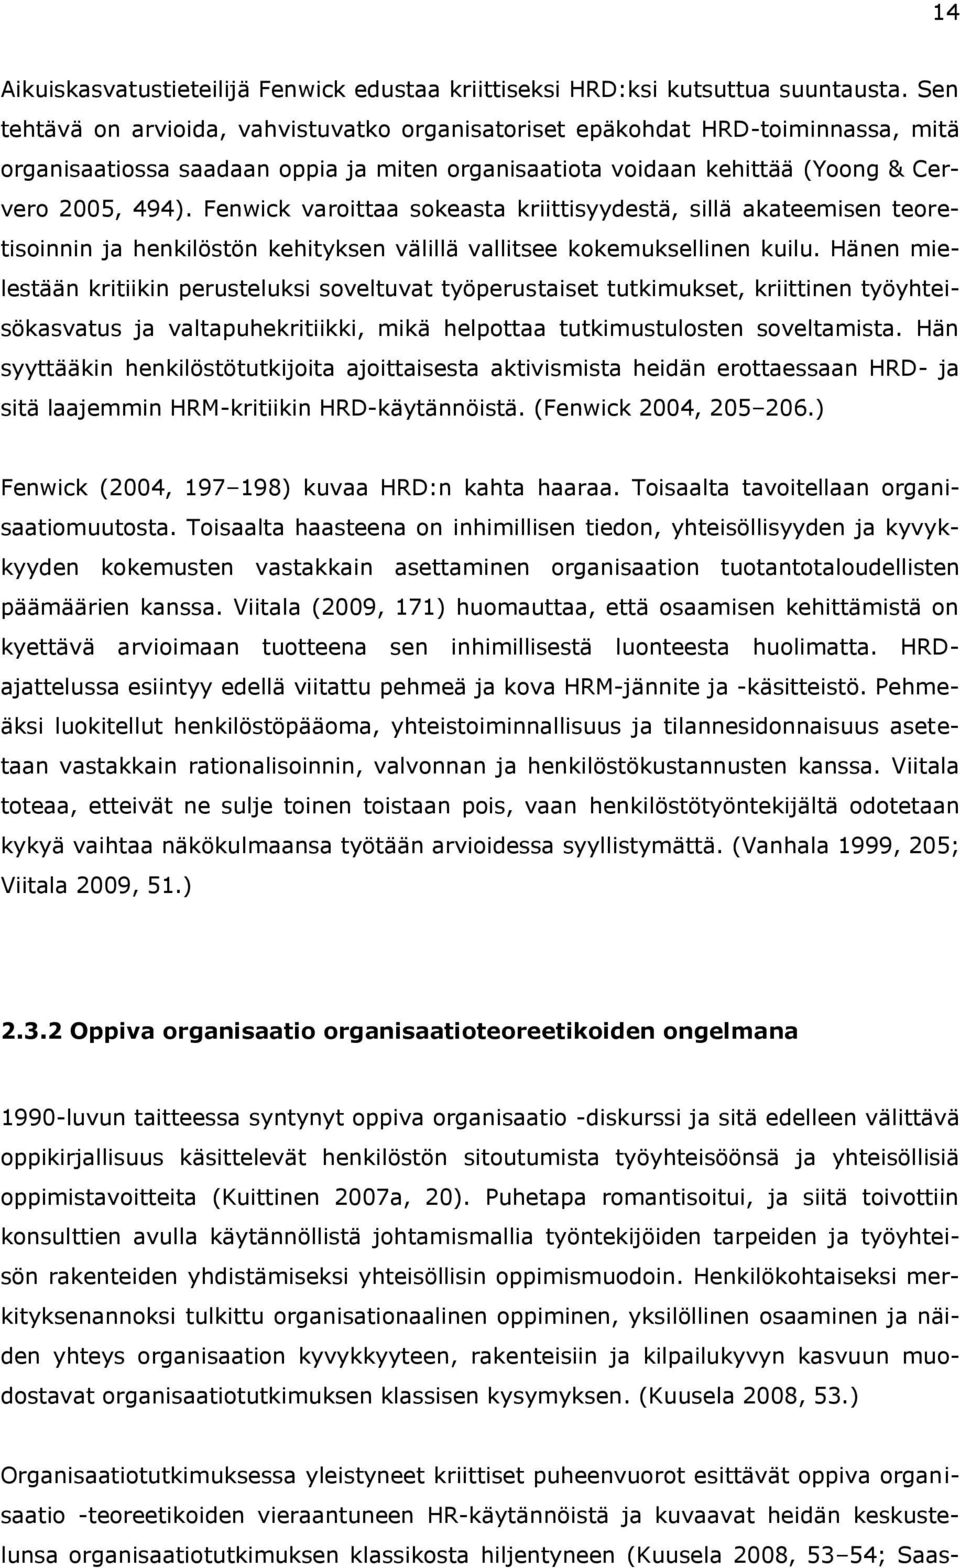 Mikko Johannes Lehtonen OPPIMISEN KIELI BUSINESS-MIELEN TAVOITTELUSSA  Tulkintakehysanalyysi kasvatusalan henkilöstötyöntekijöiden työ- ja - PDF  Ilmainen lataus